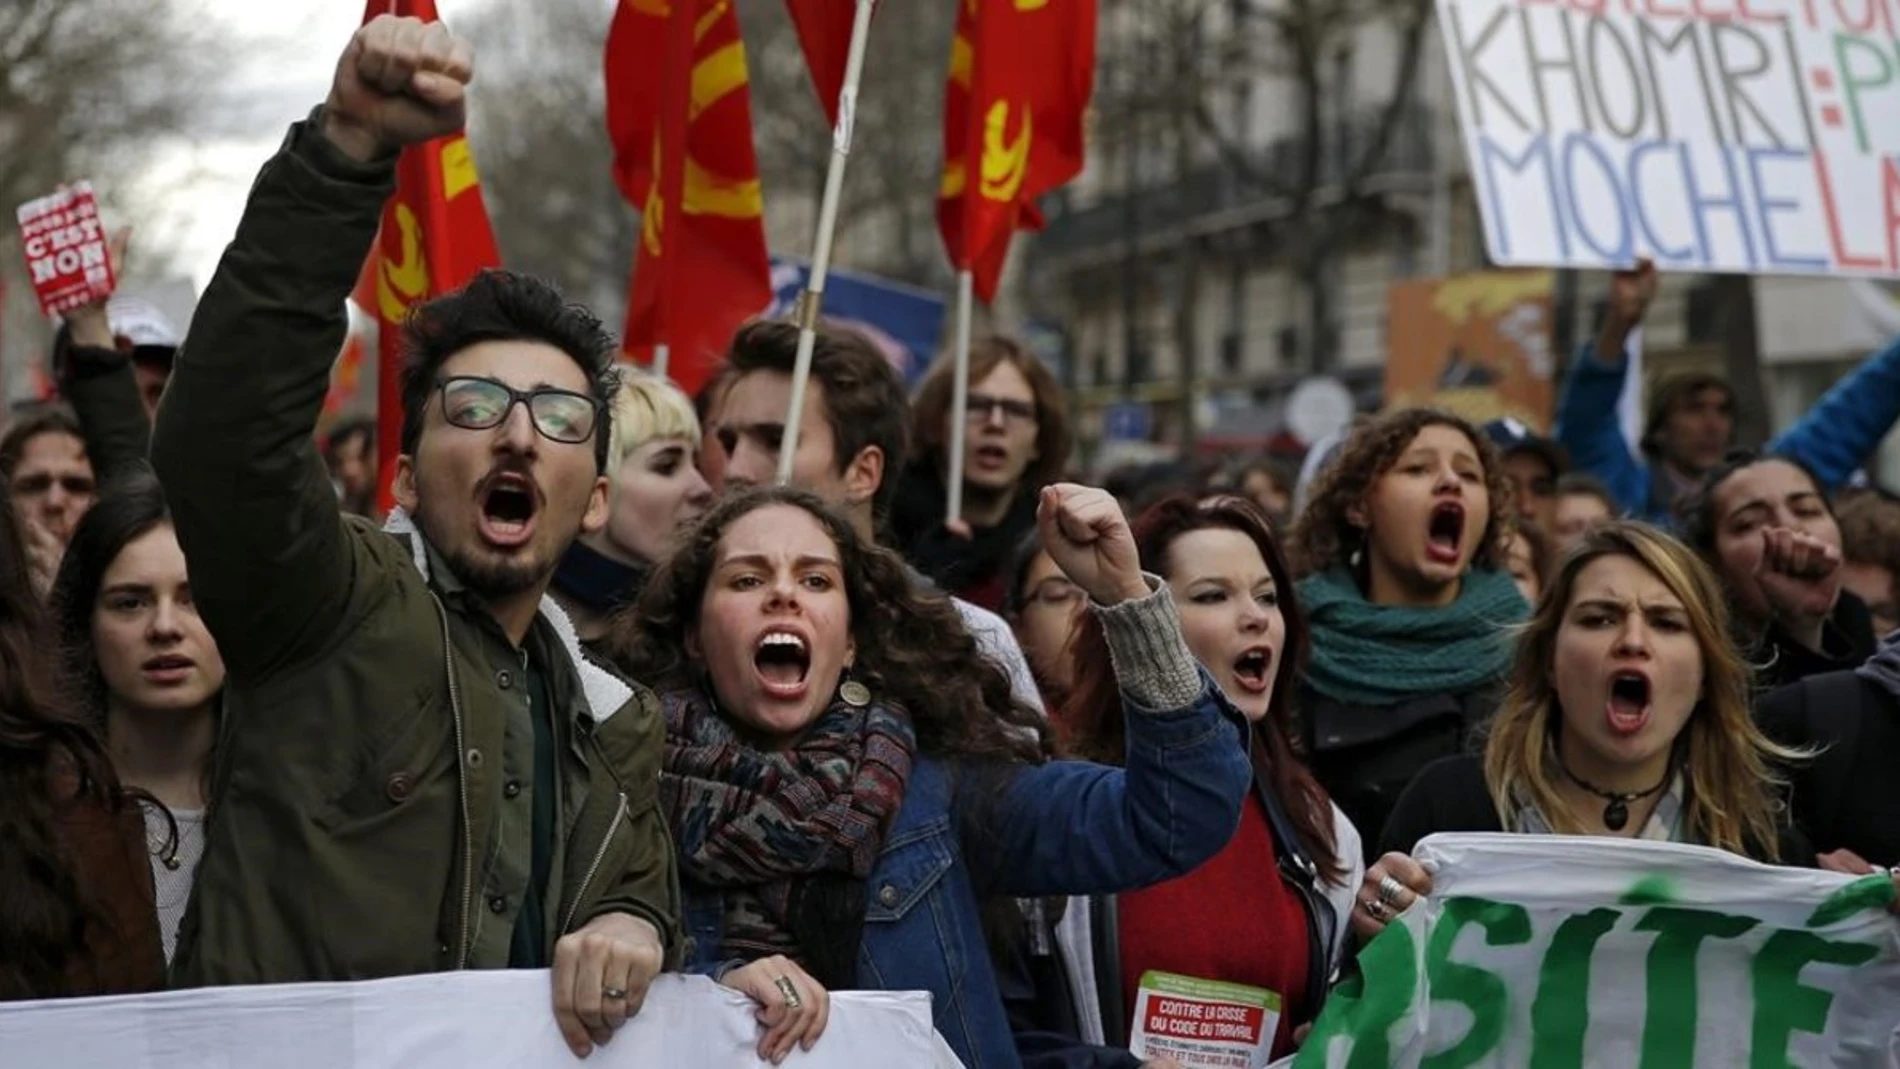 Las protestas en Francia contra la reforma laboral aprobada por Hollande se convierten en resistencia